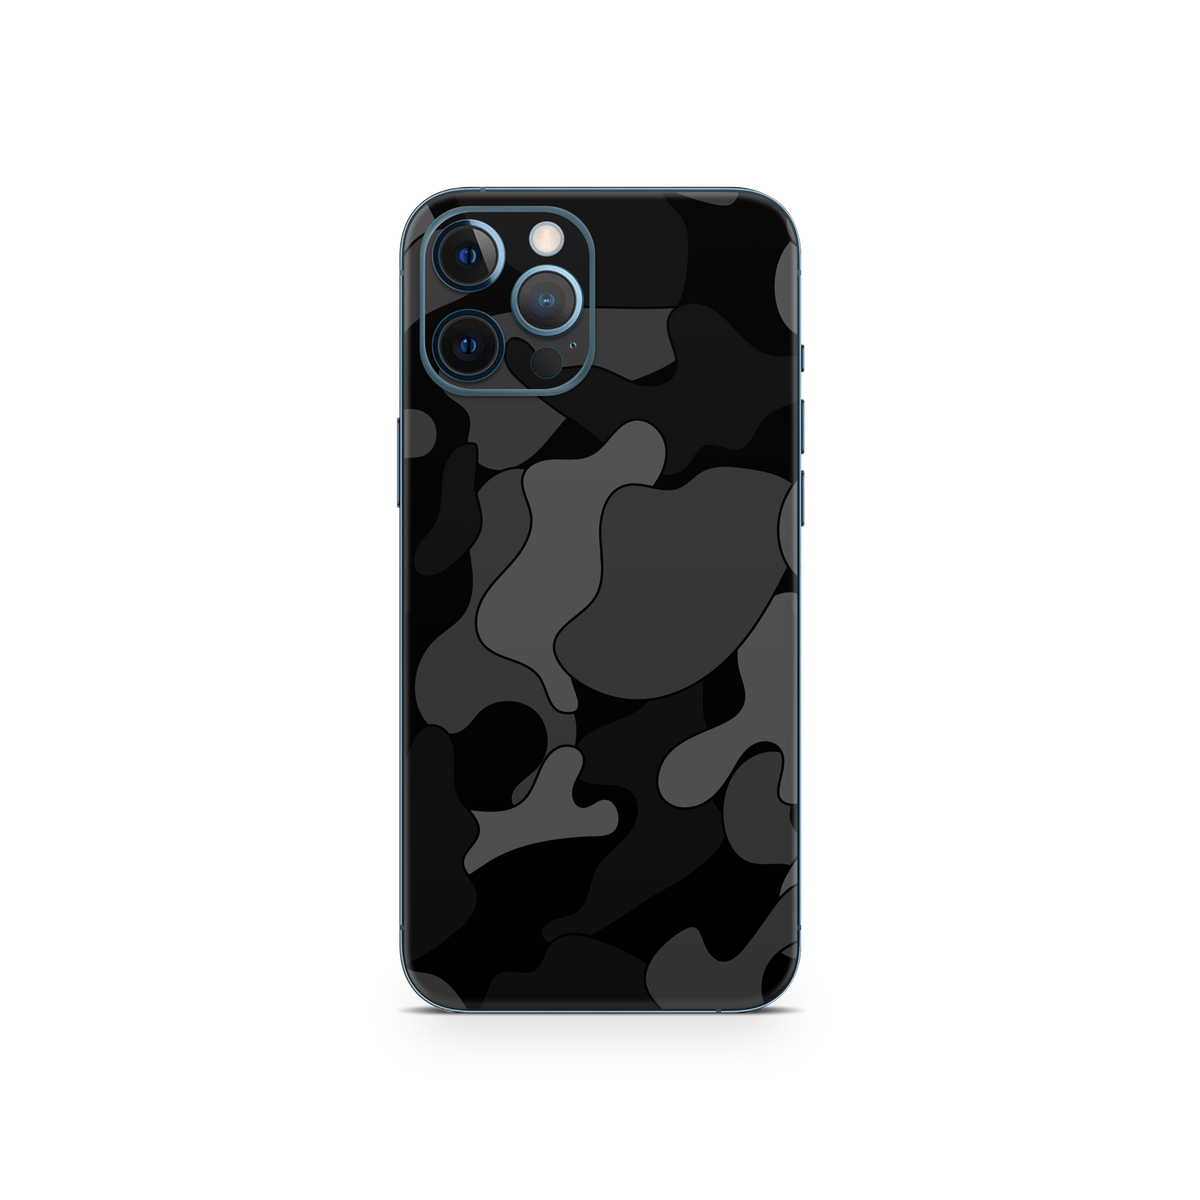 Apple iPhone 12 Pro Ape Black Camo Skin